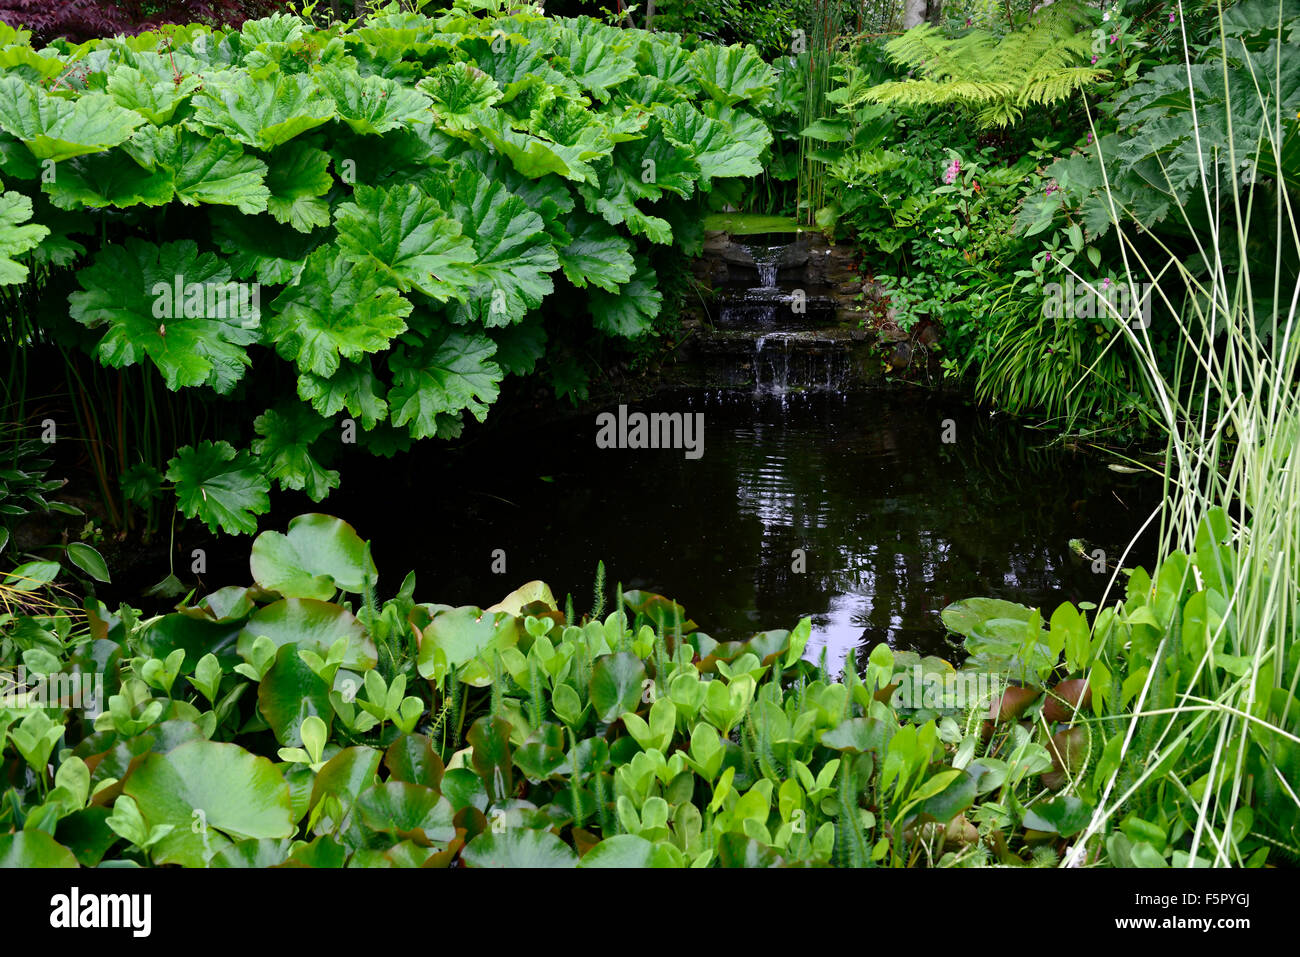 Teich umgeben von Riesen Rhabarber Gunnera Manicata Wasser Feature Garten Gartenarbeit Gartengestaltung Garten RM Floral Stockfoto